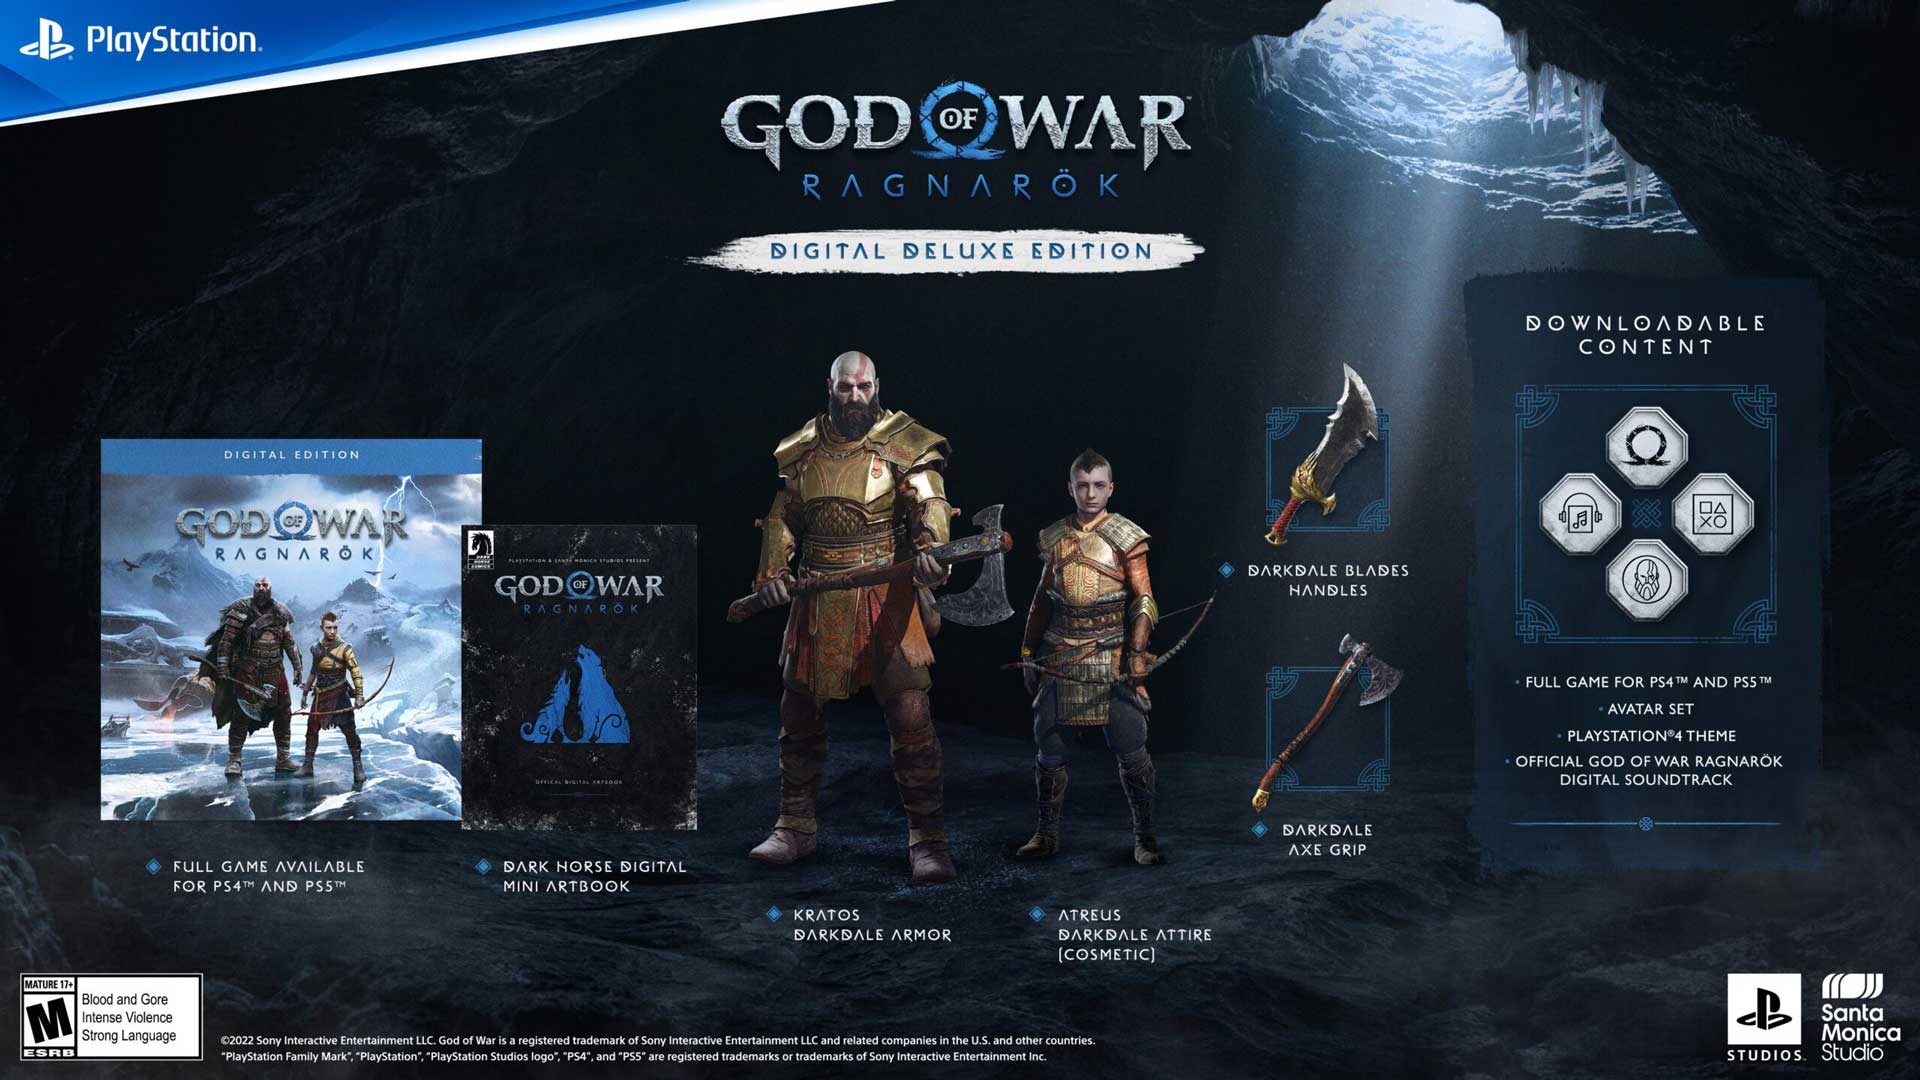 God of War Ragnarok Deluxe Digital Edition